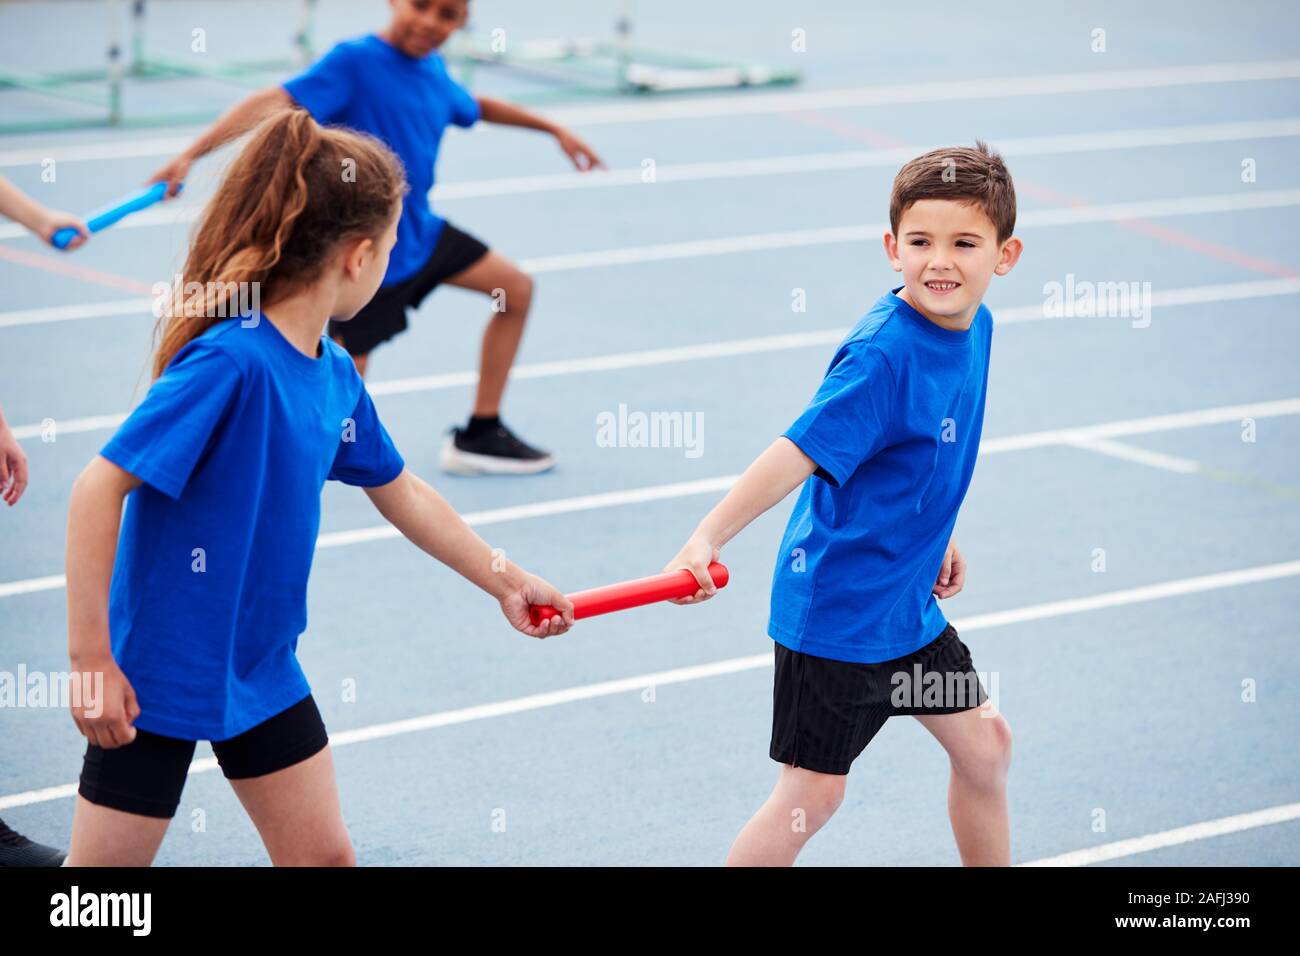 Les enfants dans l'équipe d'Athlétisme Course de relais en concurrence sur la Journée des sports Banque D'Images